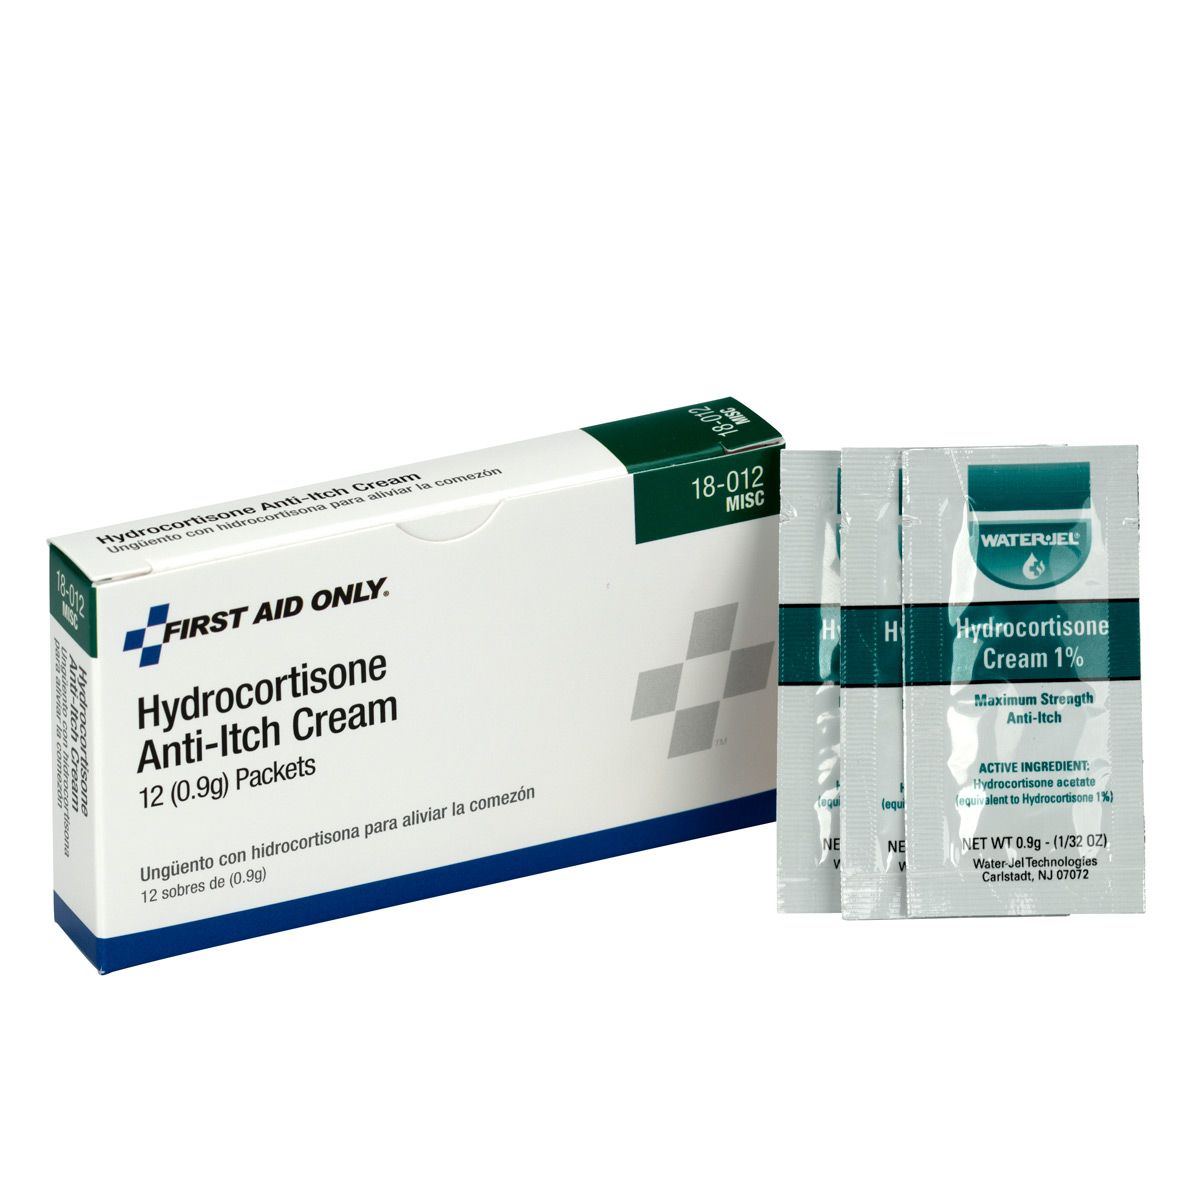 Hydrocortisone Cream - First Aid Safety